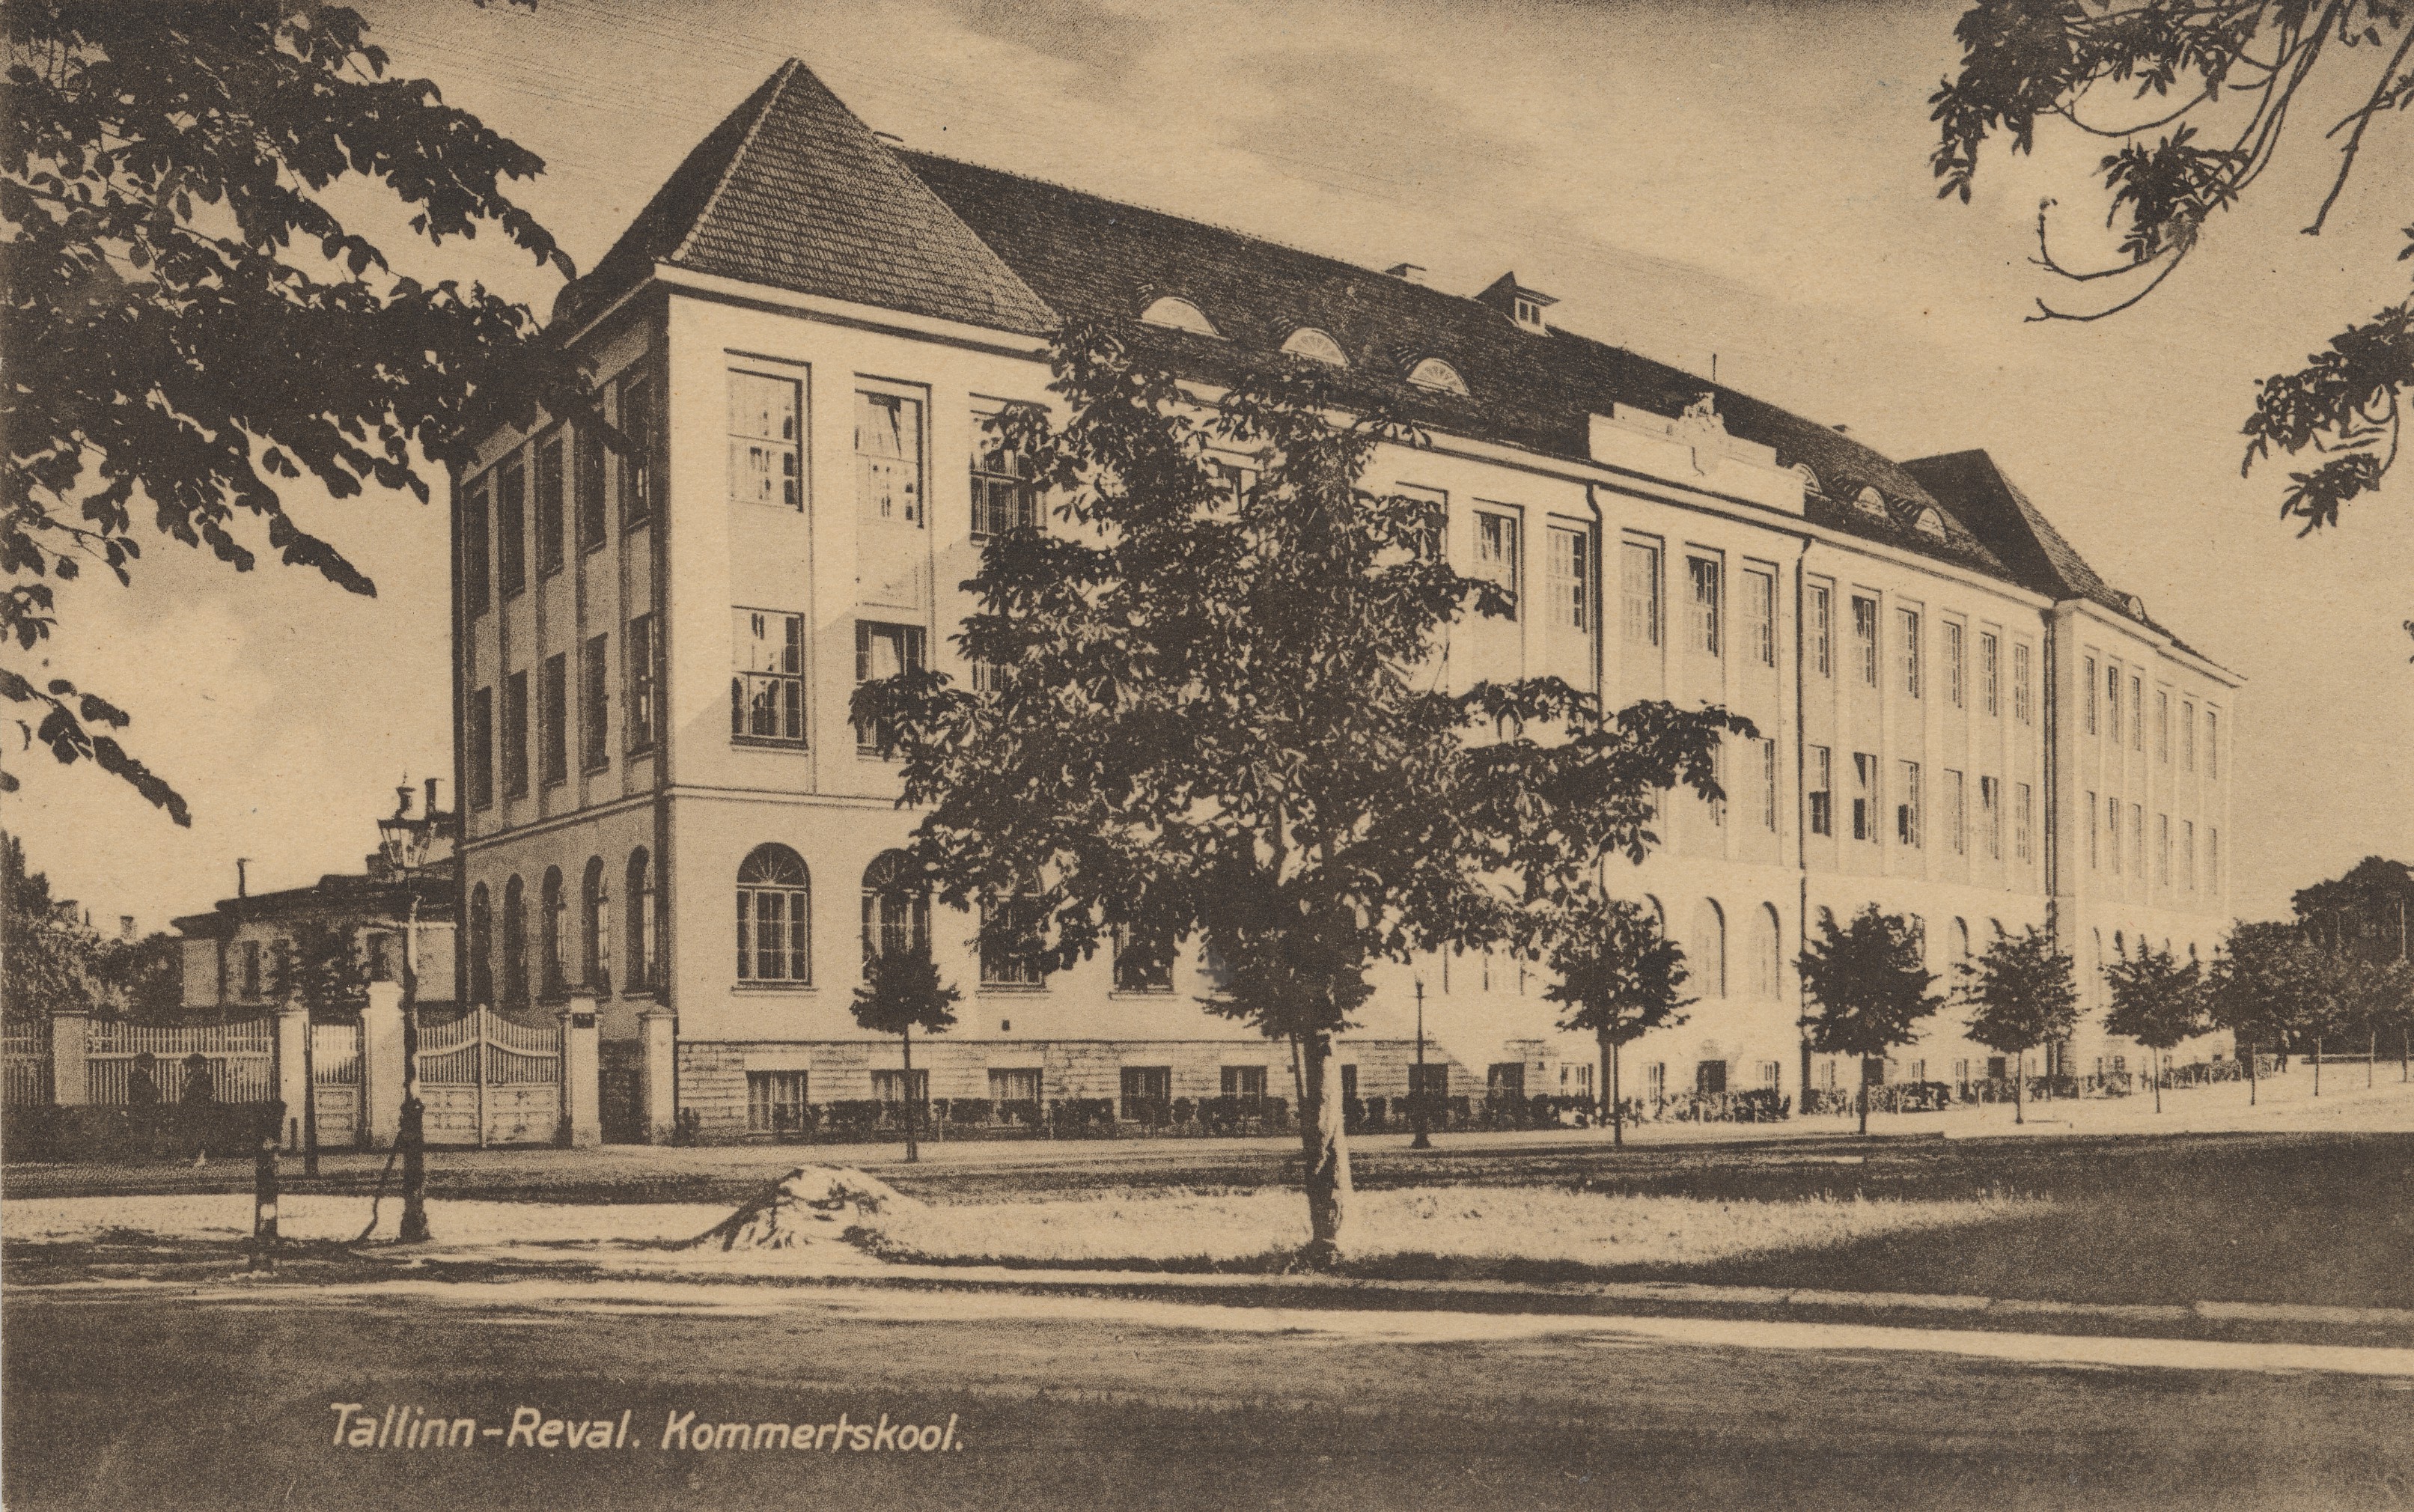 Tallinn-reval : Commercial School